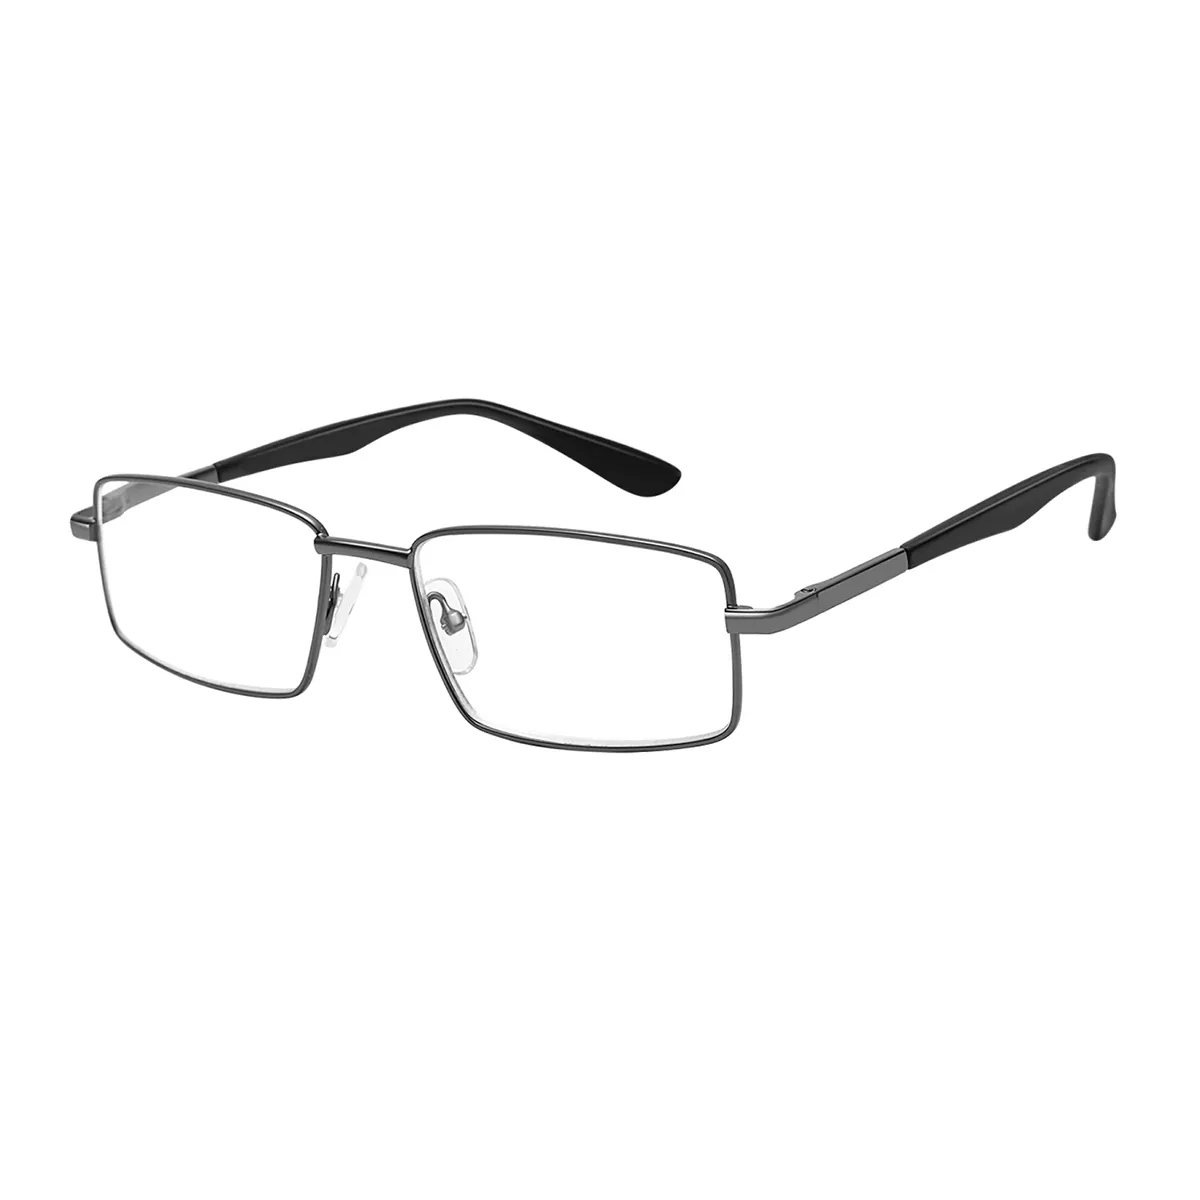 Brunson - Rectangle Gun Glasses for Men